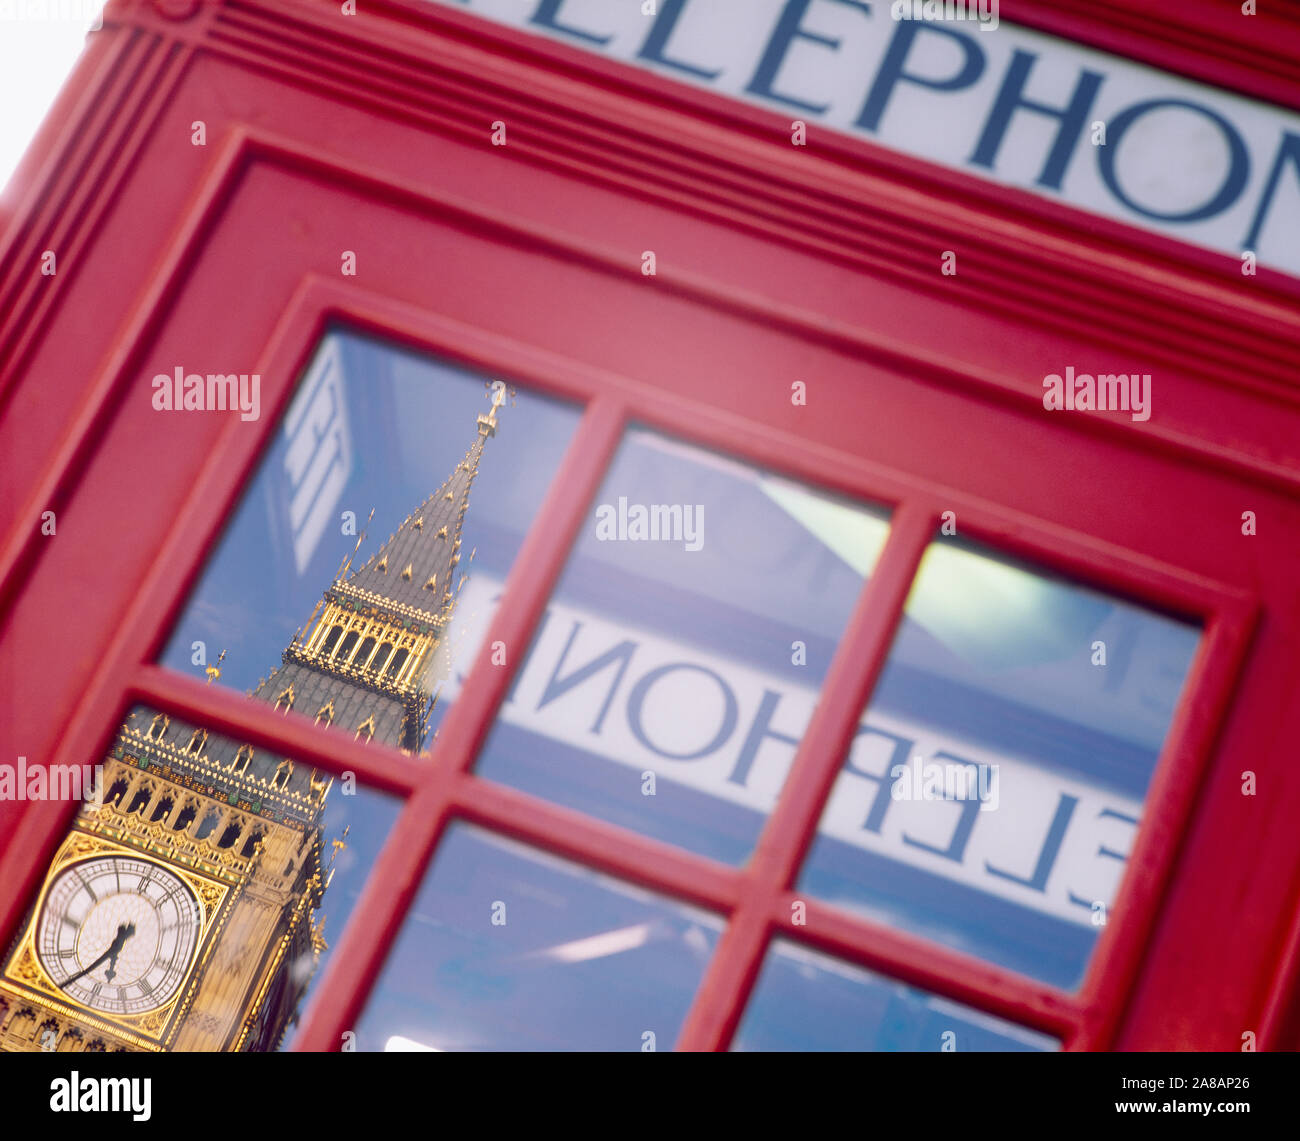 Reflet d'une tour de l'horloge sur la vitre d'une cabine téléphonique, Big Ben, Londres, Angleterre Banque D'Images